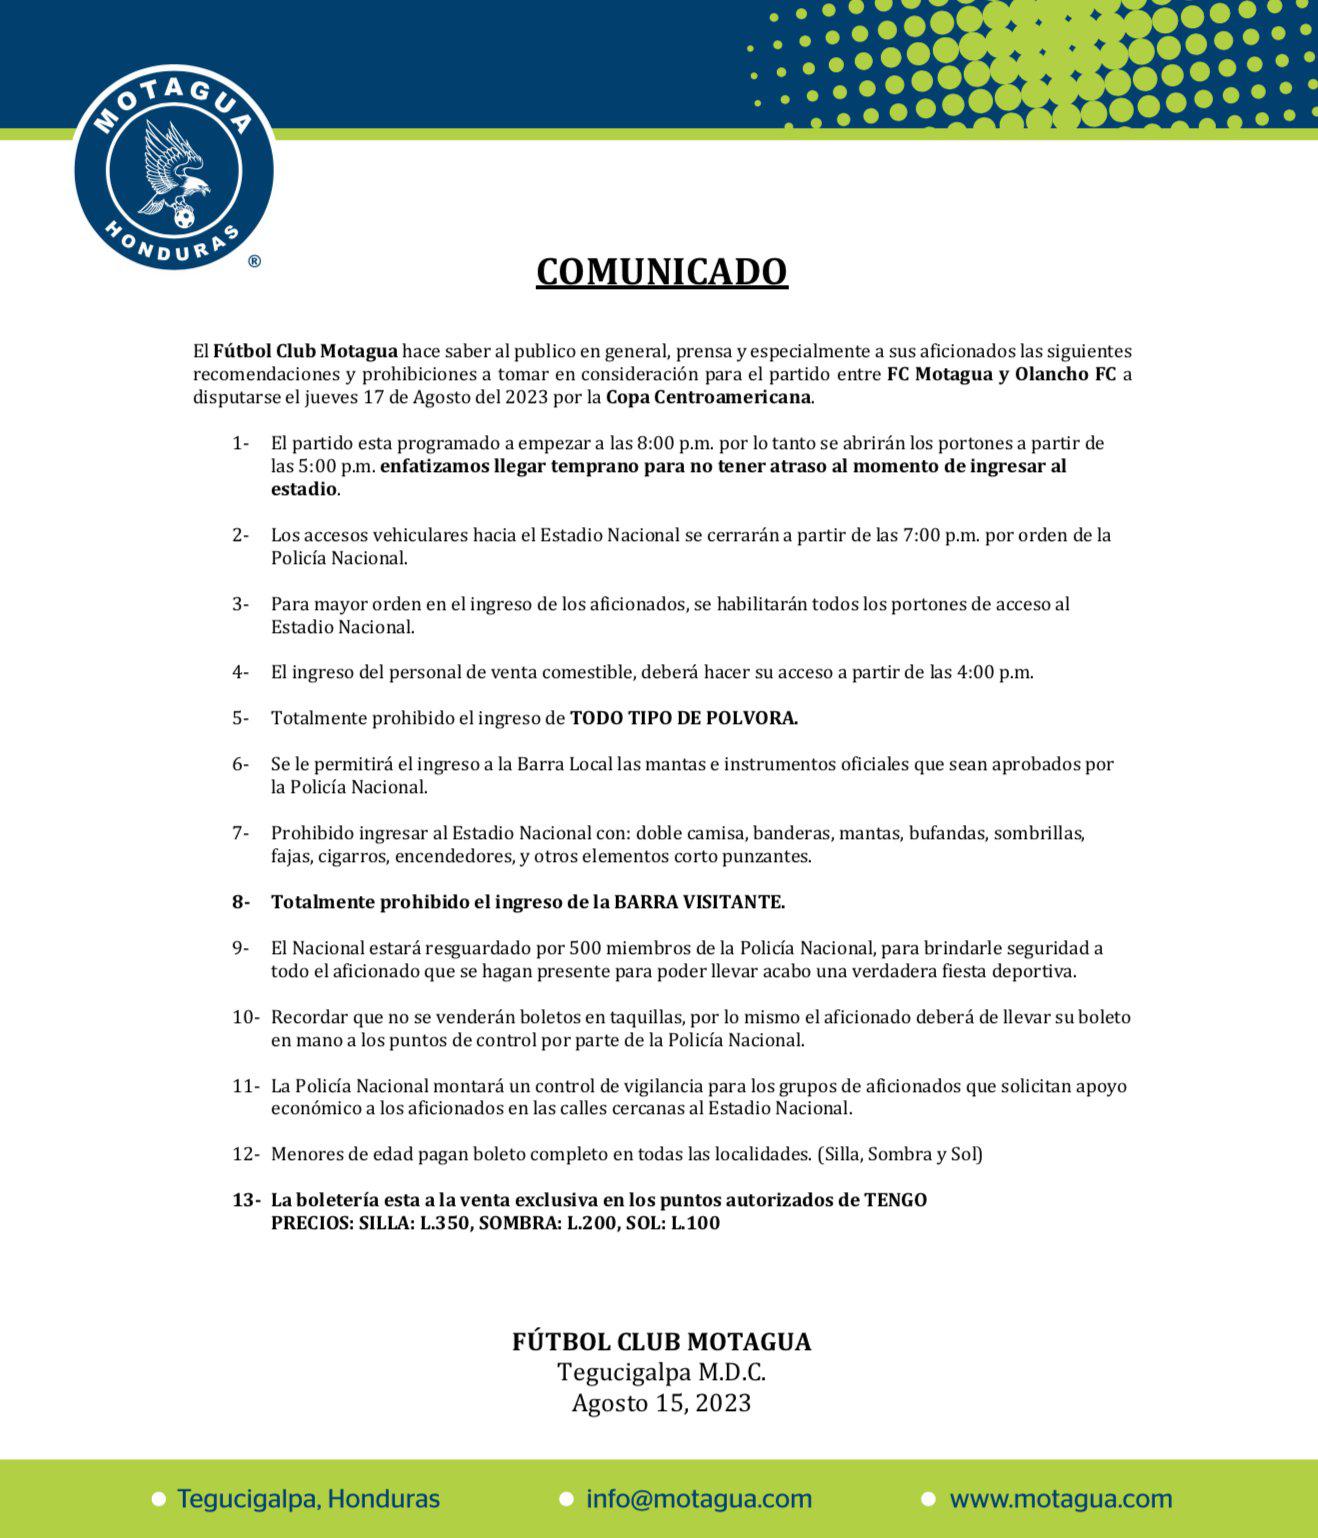 Las recomendaciones y prohibiciones para el partido entre Motagua y Olancho FC por la Copa Centroamericana